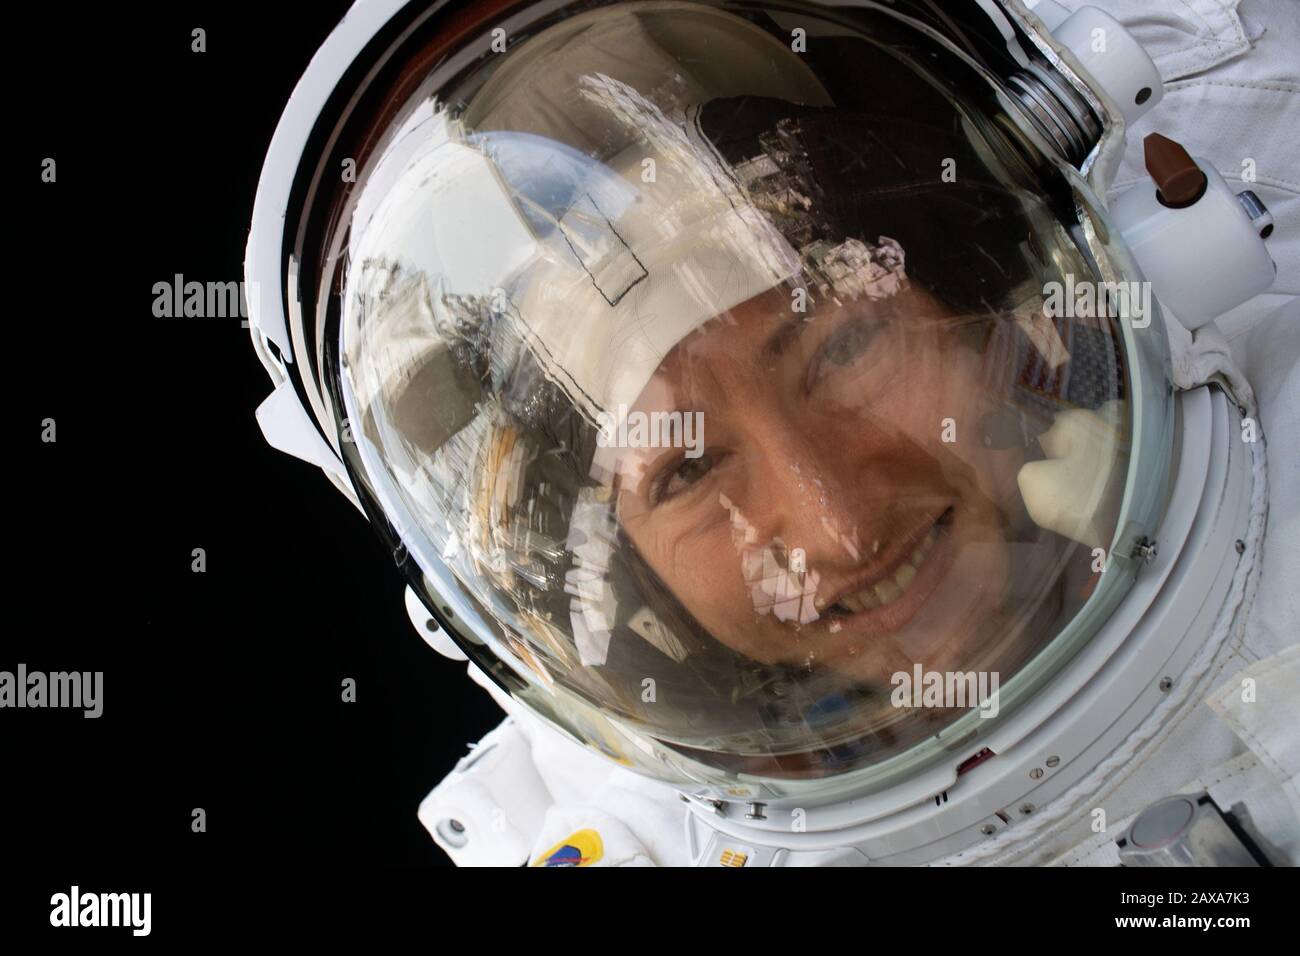 Washington, Vereinigte Staaten. Februar 2020. Die NASA-Astronautin Christina Koch kehrte am 6. Februar 2020 zur Erde zurück und absolvierte den längsten ununterbrochenen Raumflug für eine Astronautin, nachdem sie 328 Tage an Bord der Internationalen Raumstation gelebt und gearbeitet hatte. Ihre Mission half Wissenschaftlern, Daten für zukünftige Missionen zum Mond und zum Mars zu sammeln. NASA/UPI Credit: UPI/Alamy Live News Stockfoto